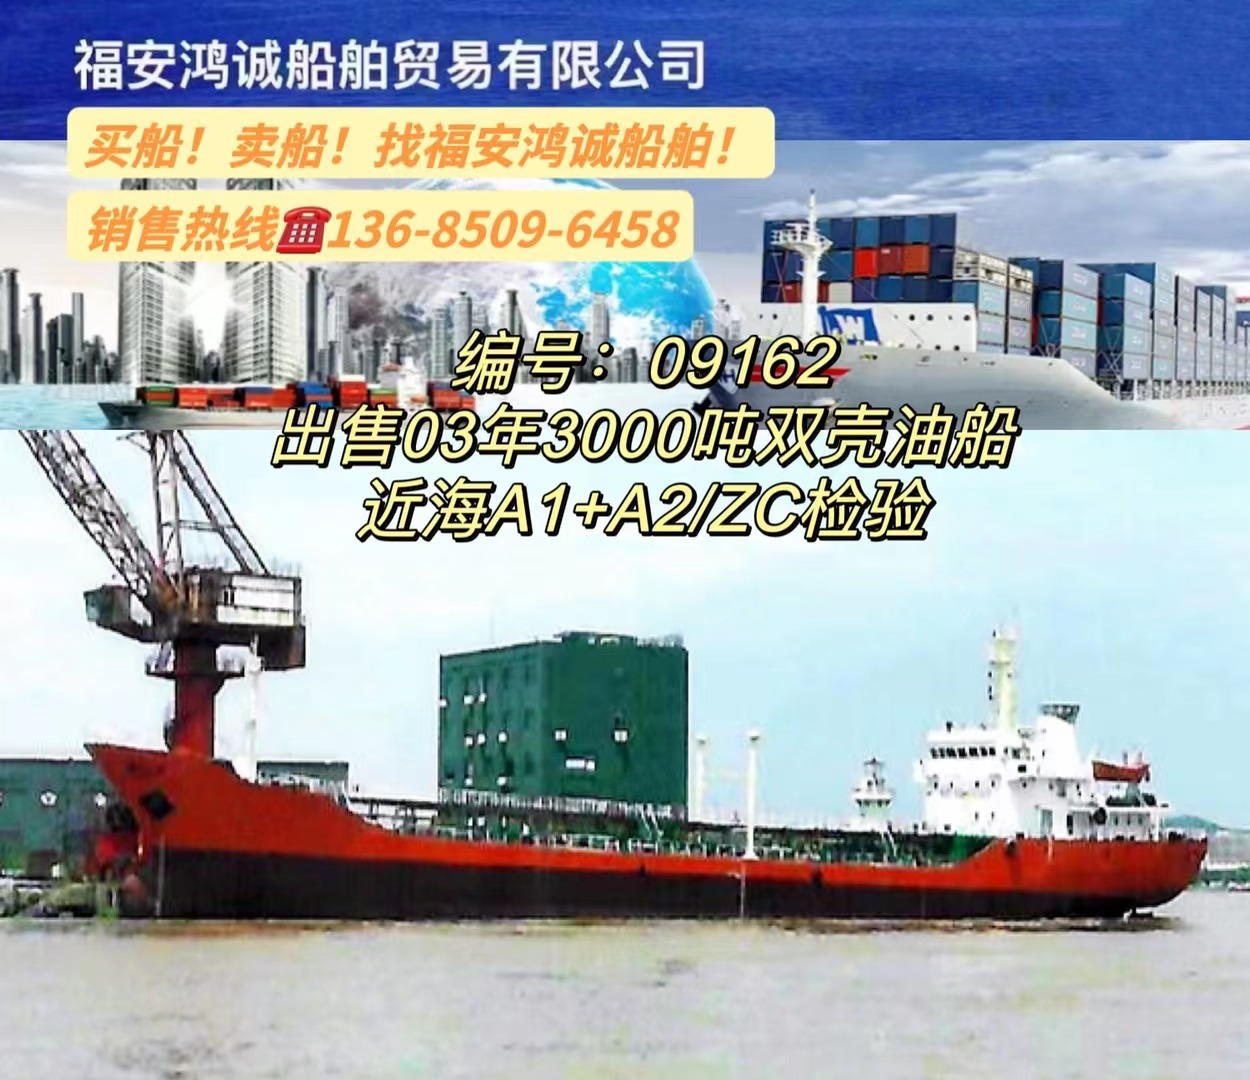 出售3000吨油船2003年建造